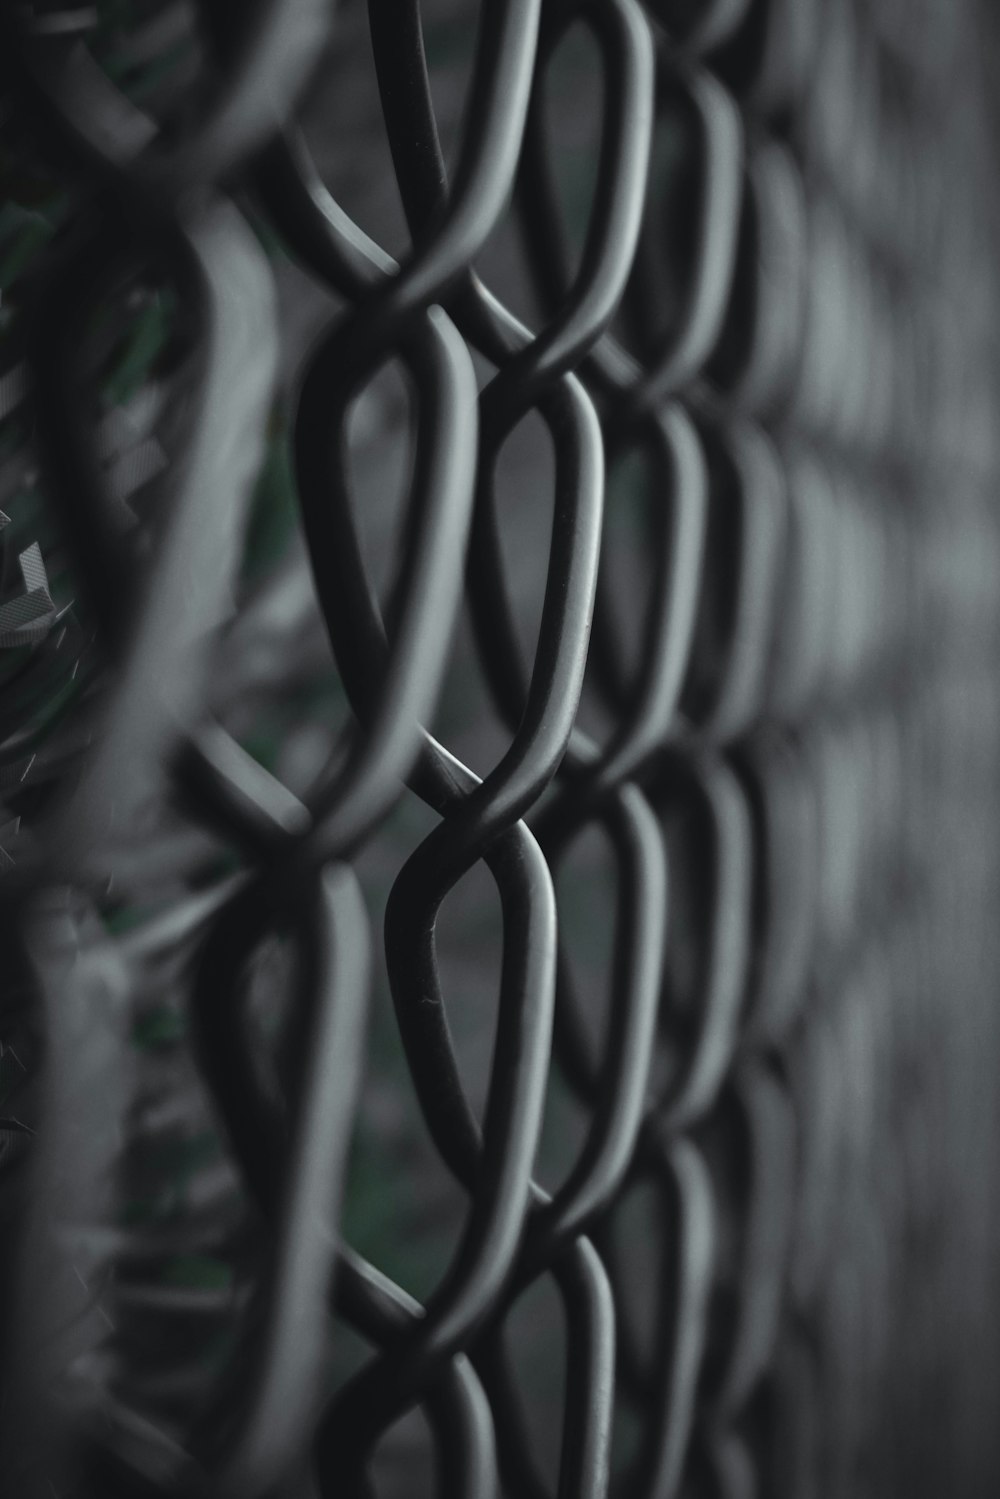 Una foto en blanco y negro de una cerca de alambre